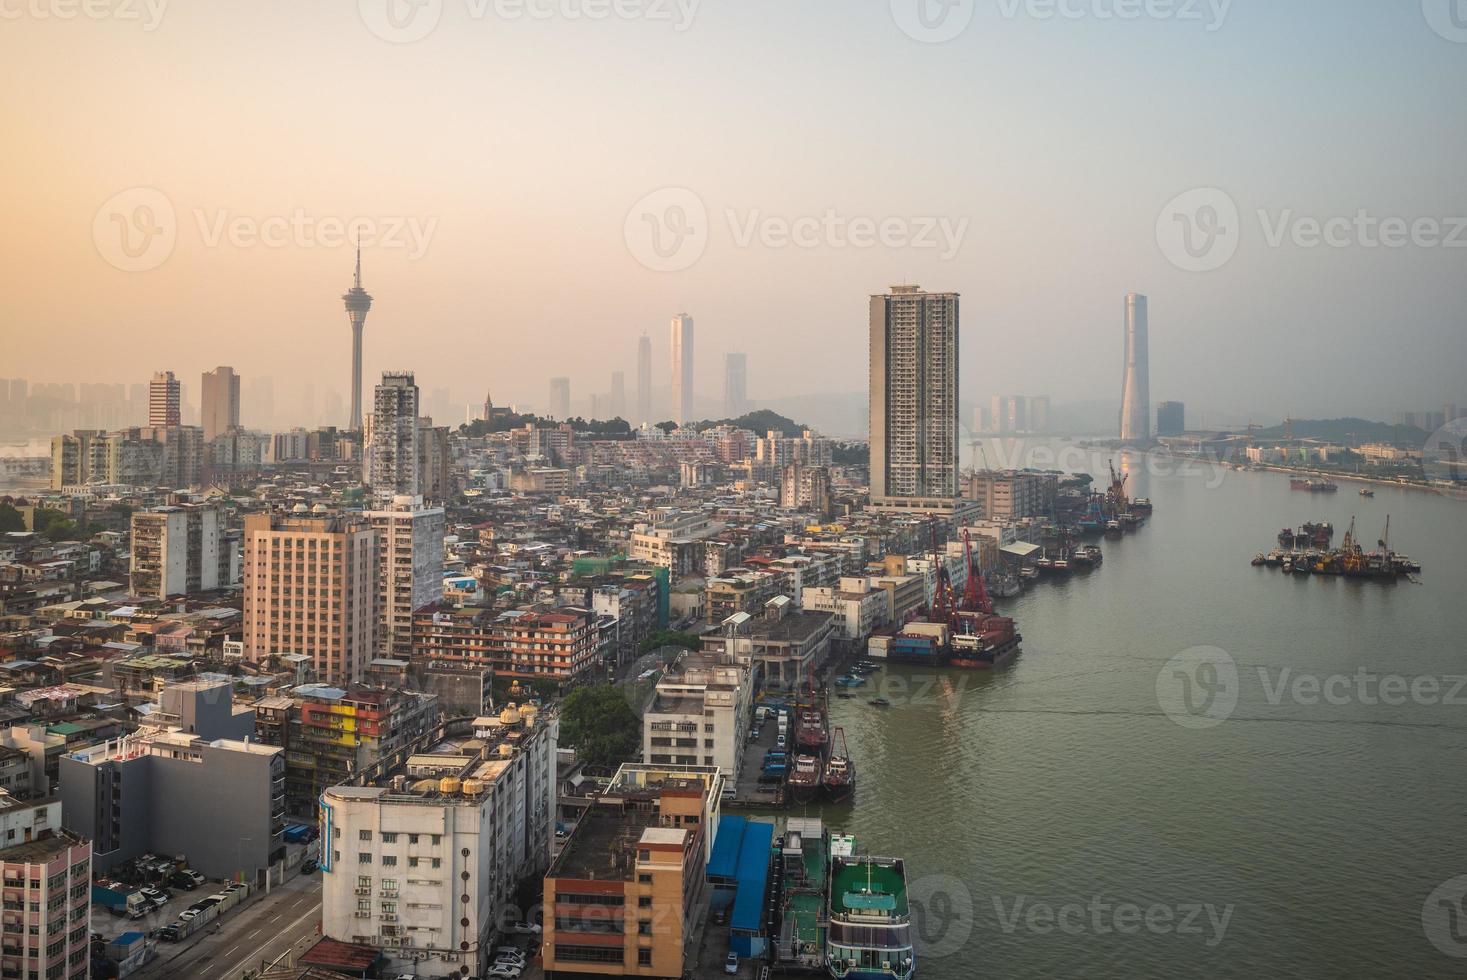 paisaje urbano de macao en china foto